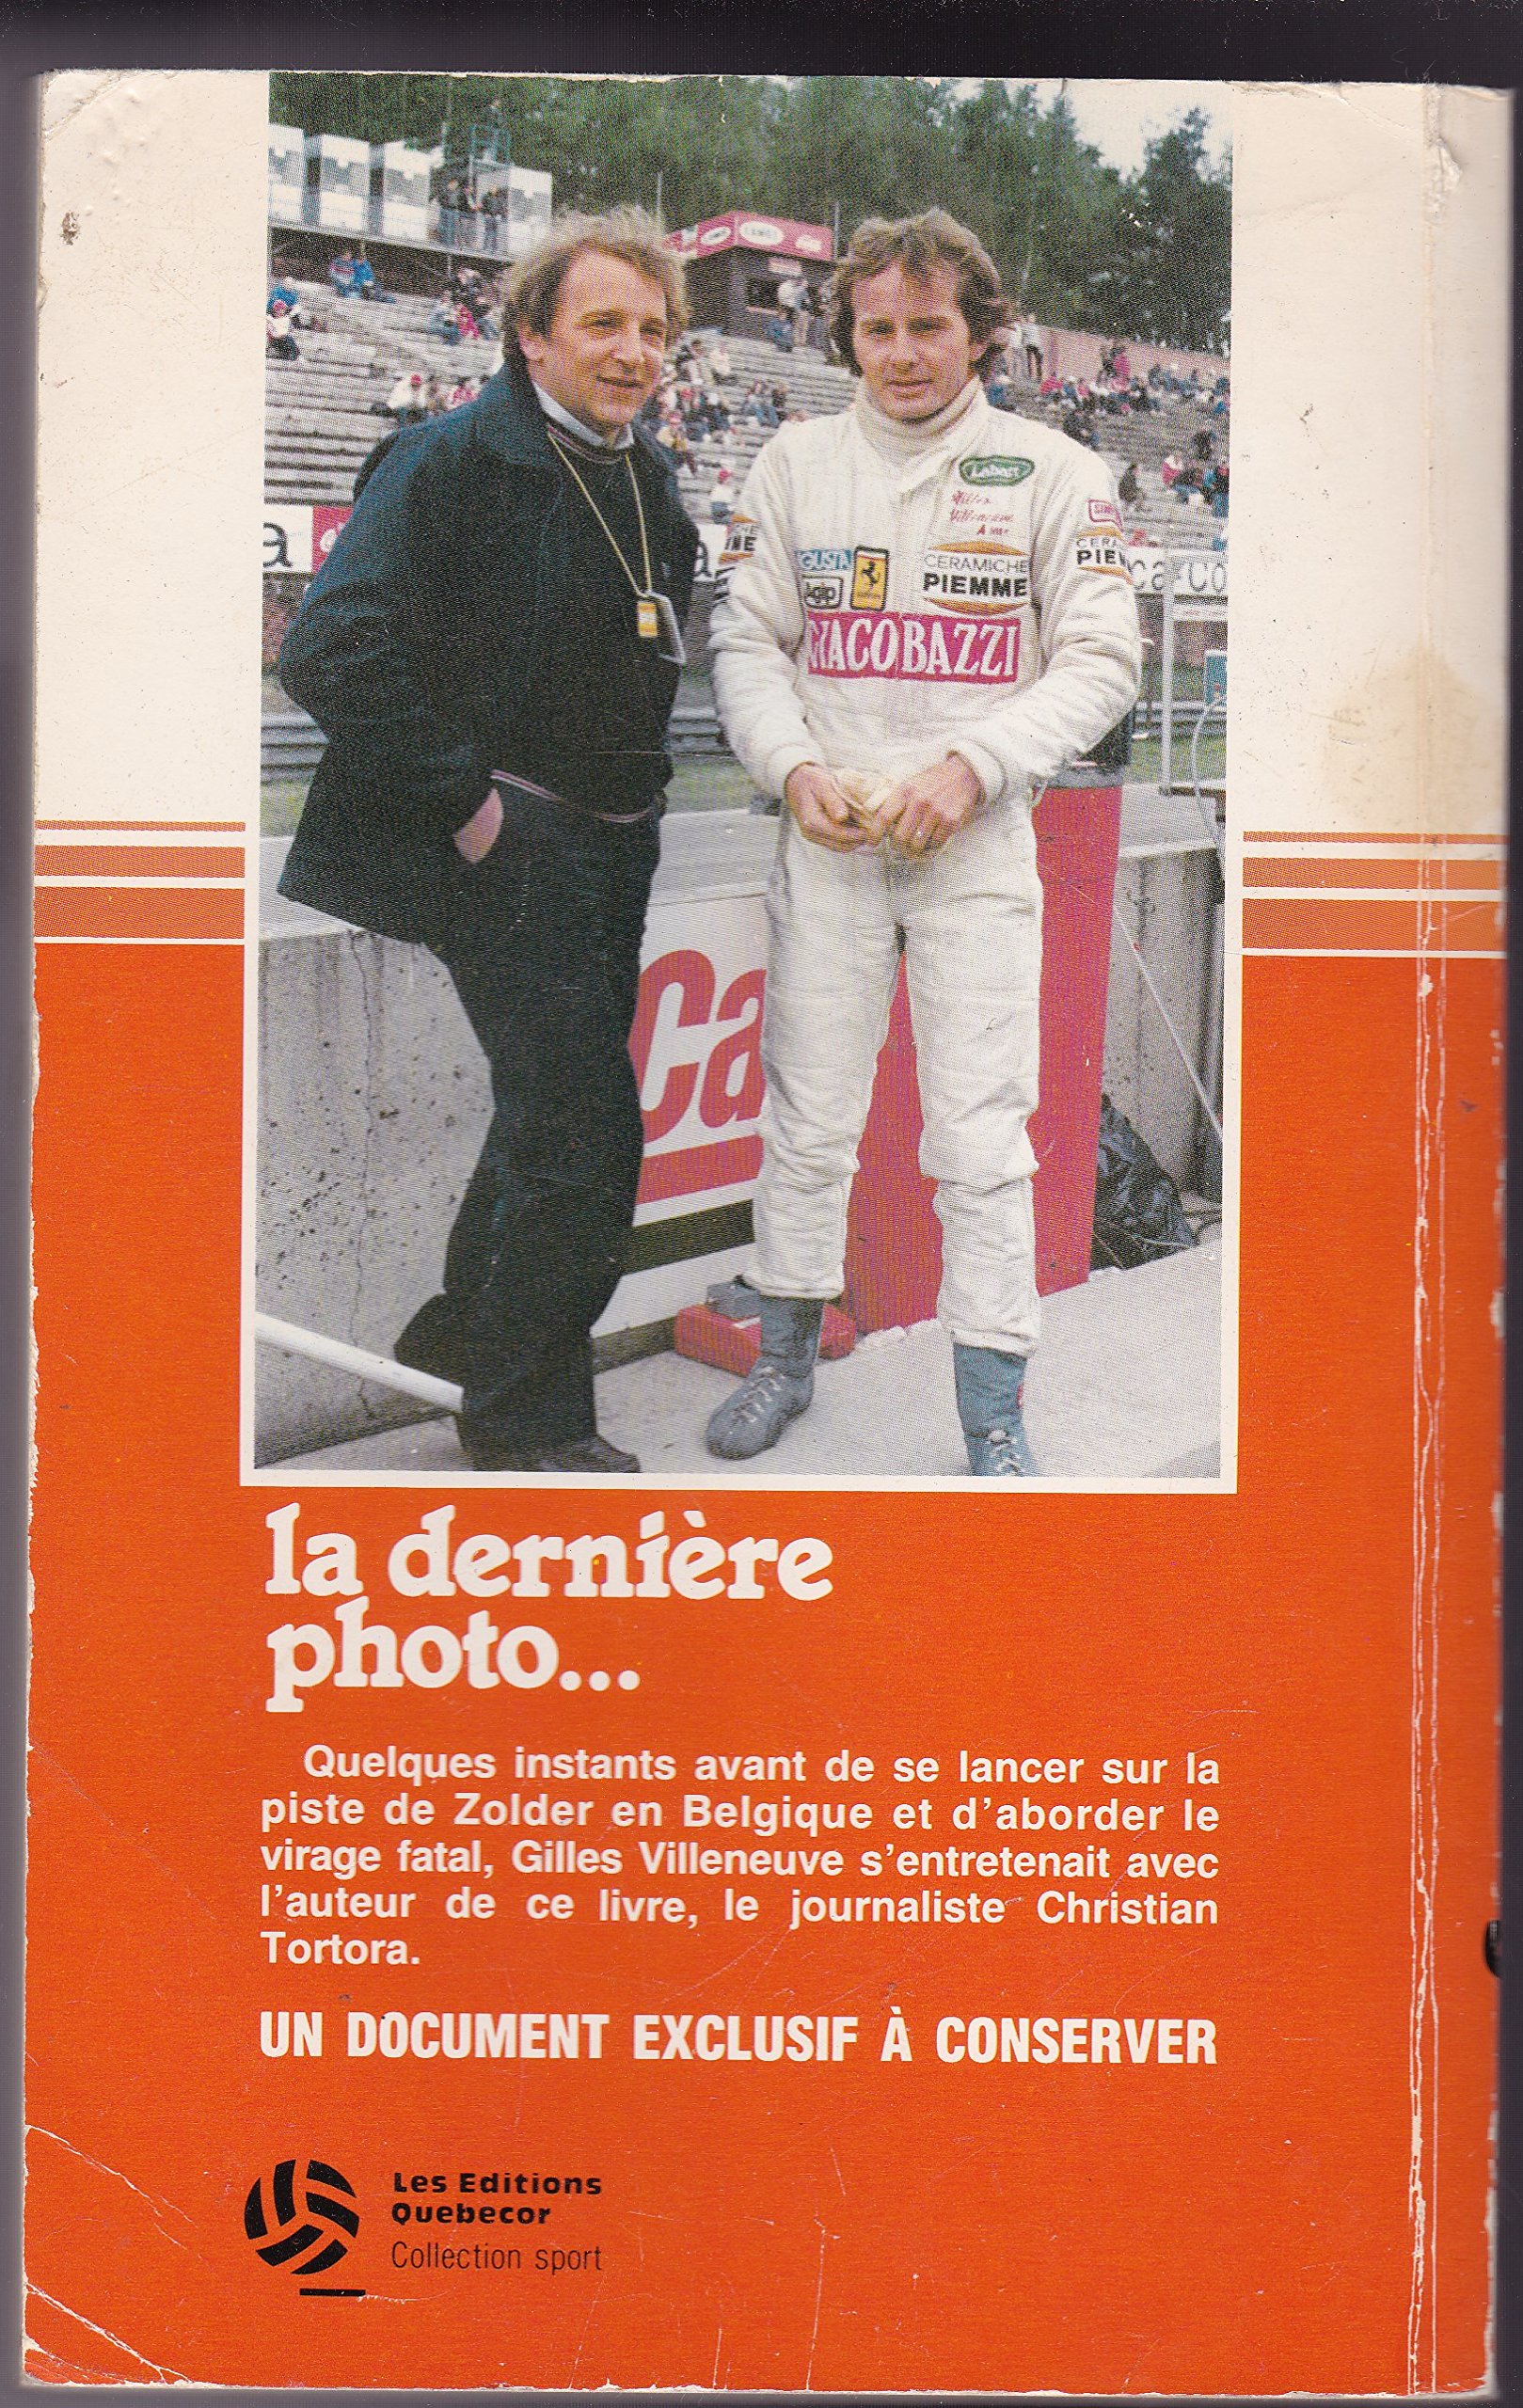 The last photo of Gilles Villeneuve.